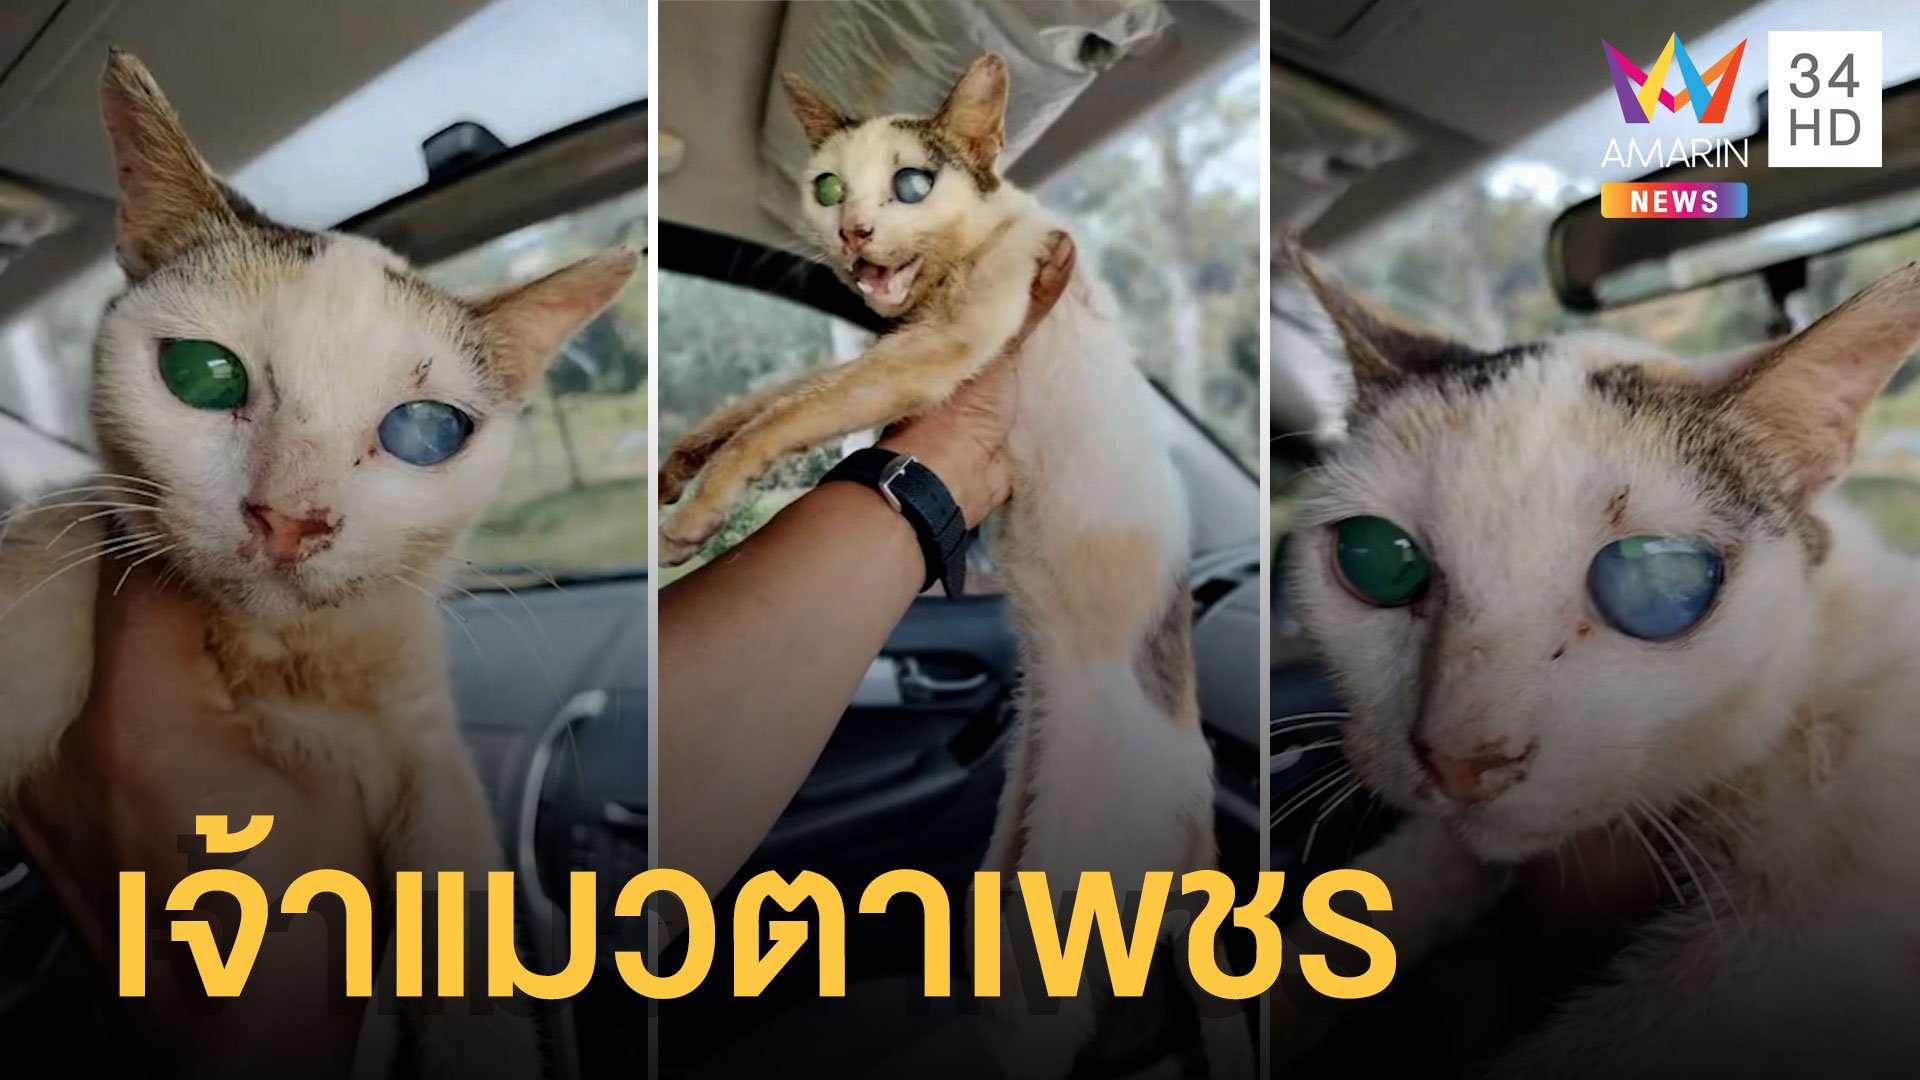 หนุ่มเจอ "แมวตาเพชร" ข้างถนน ดวงตาสวยมากสีฟ้ากับสีเขียว | ข่าวอรุณอมรินทร์ | 9 ส.ค. 65 | AMARIN TVHD34